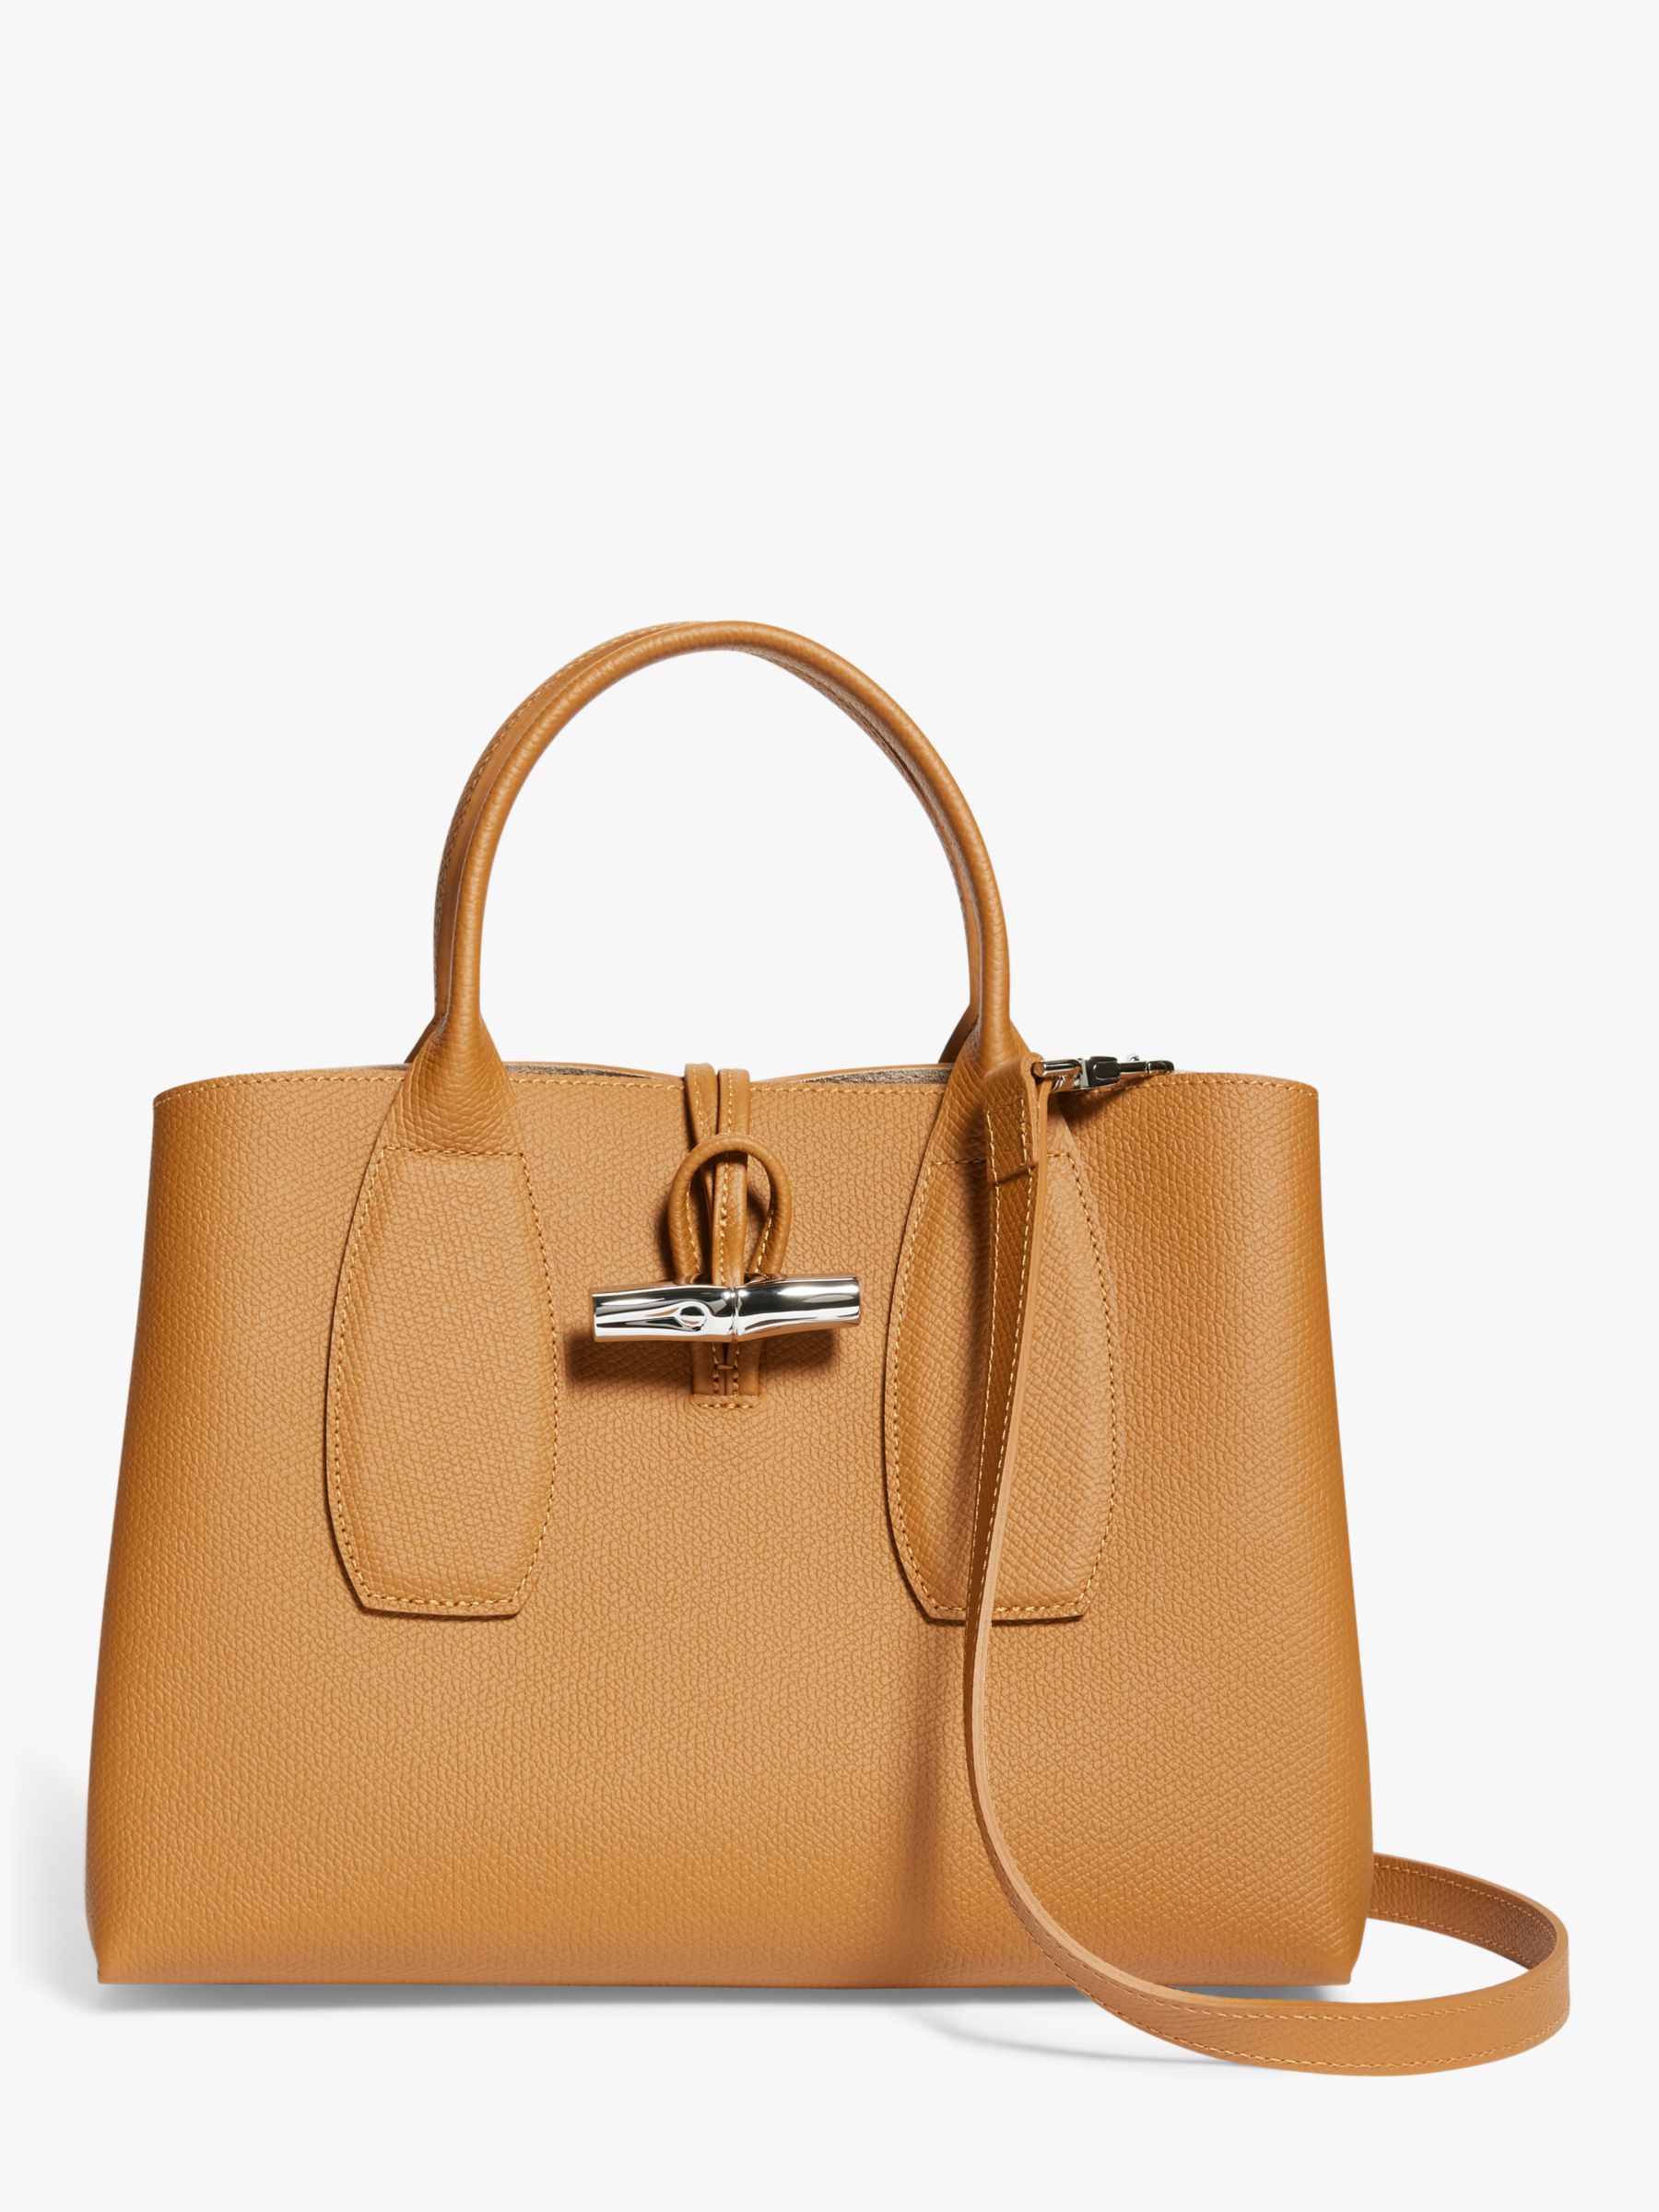 Longchamp Roseau Medium Leather Top Handle Bag, Natural at John Lewis ...